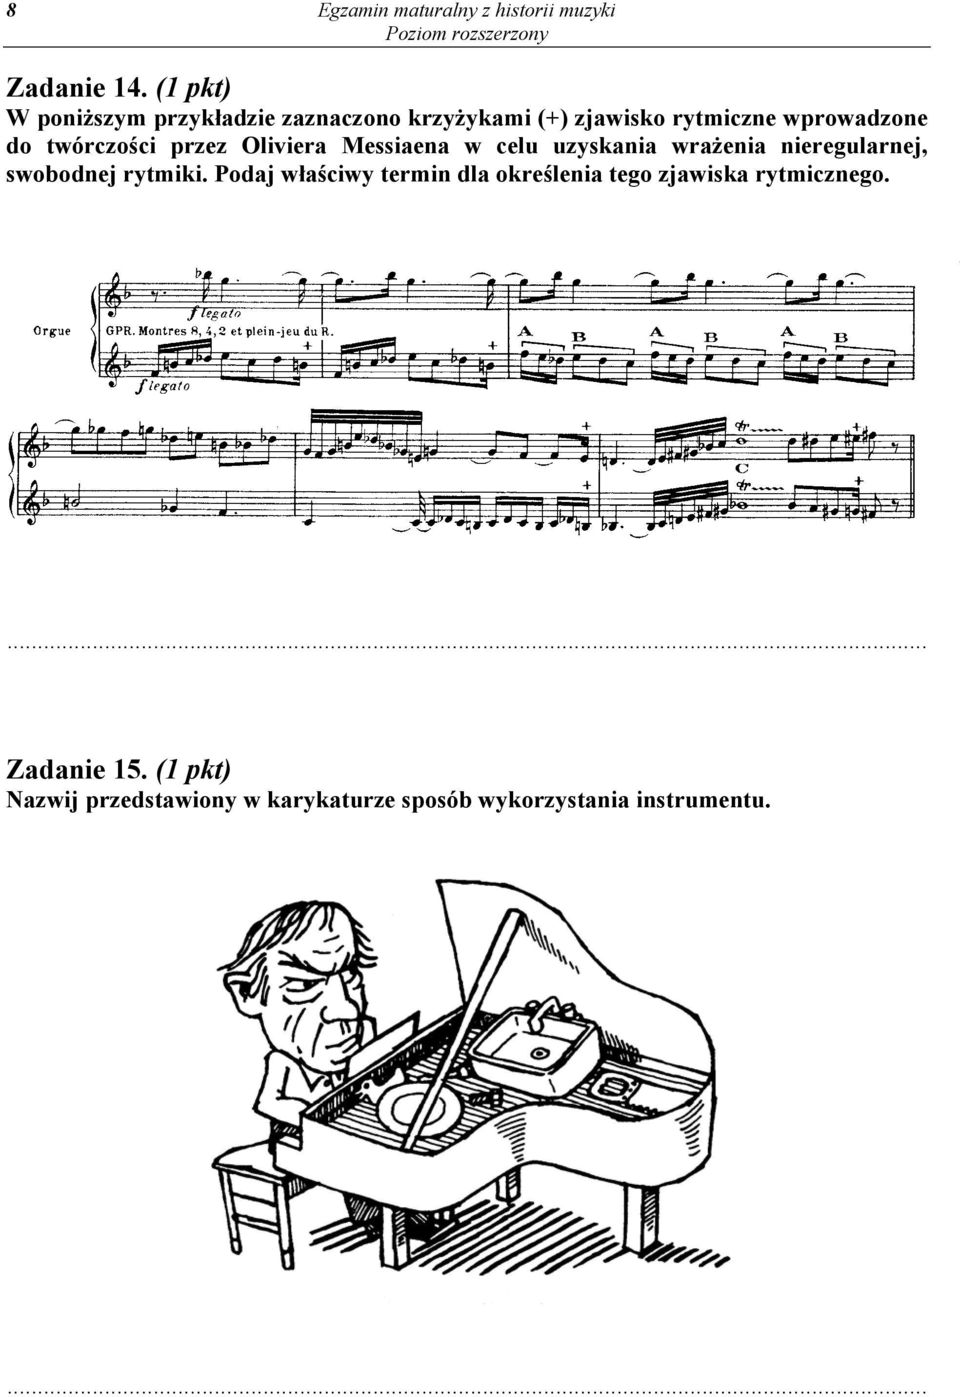 twórczości przez Oliviera Messiaena w celu uzyskania wrażenia nieregularnej, swobodnej rytmiki.